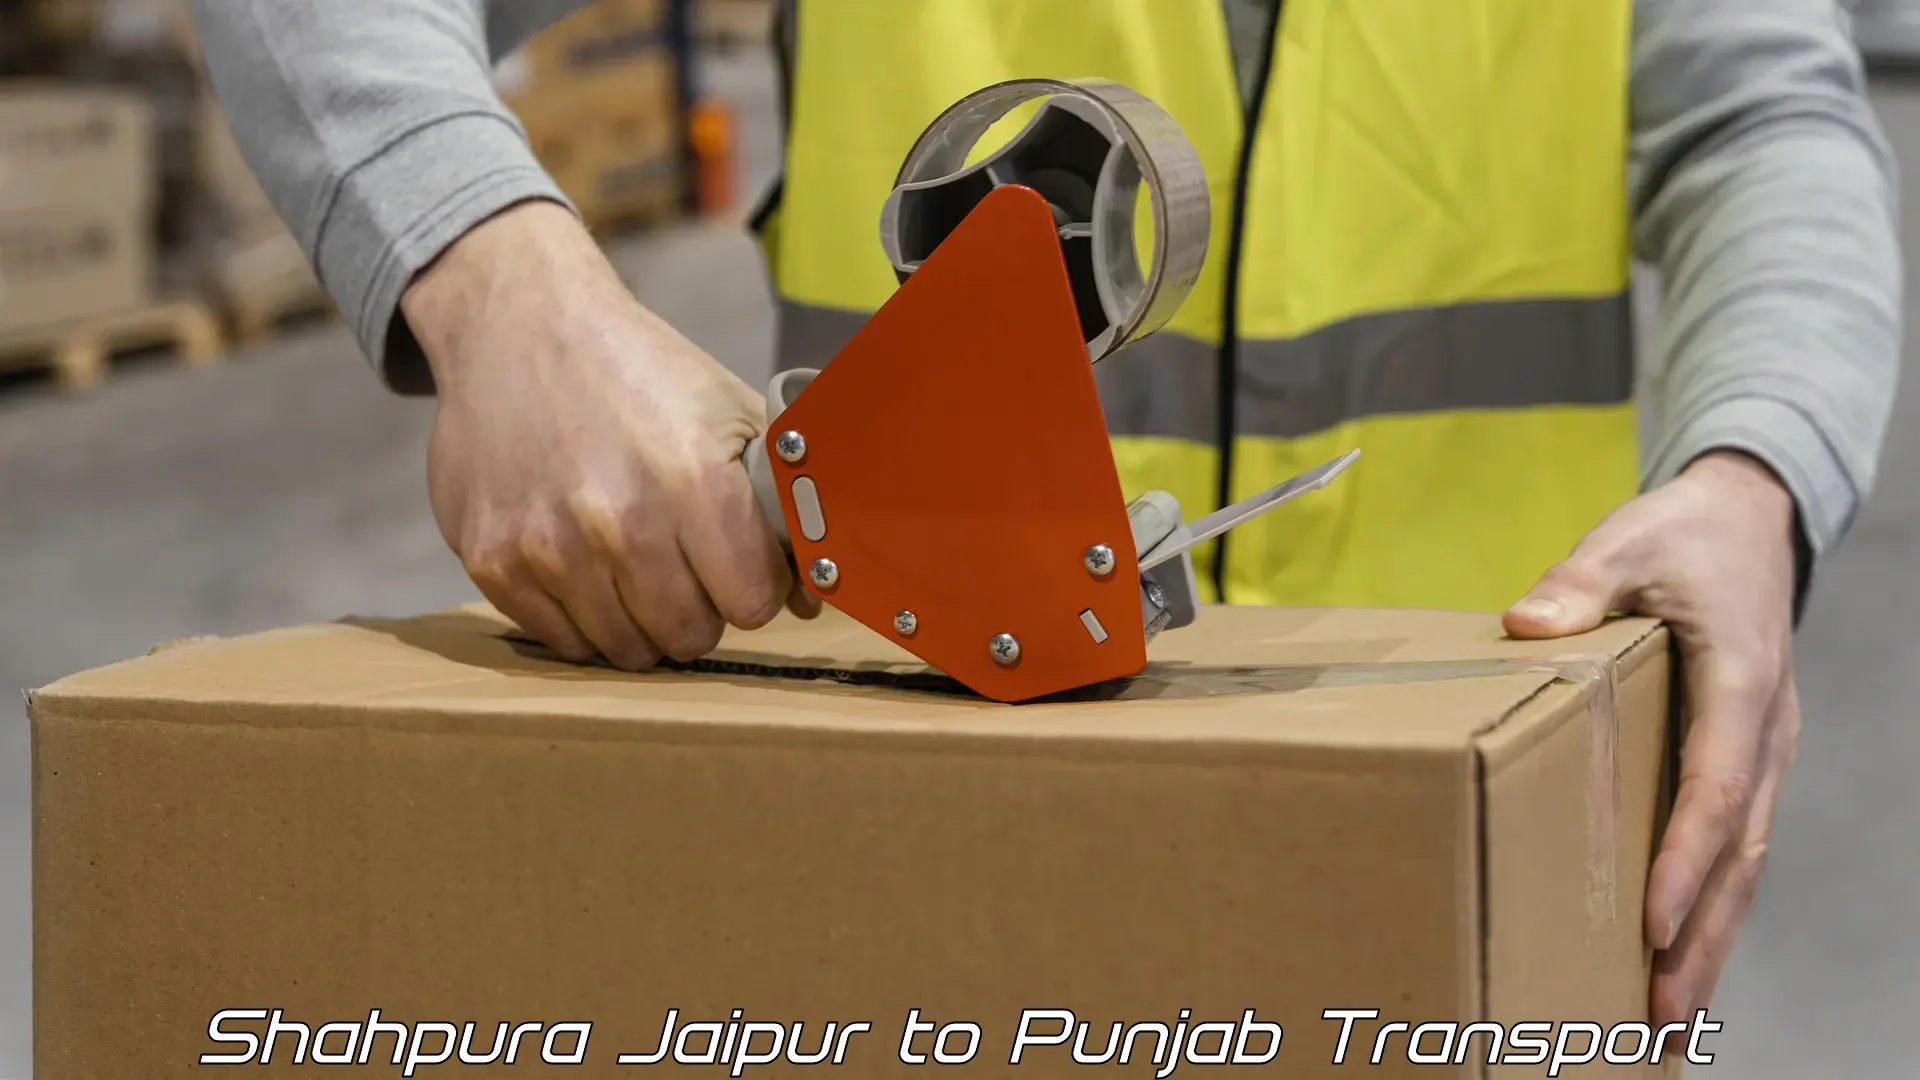 Transport in sharing Shahpura Jaipur to Punjab